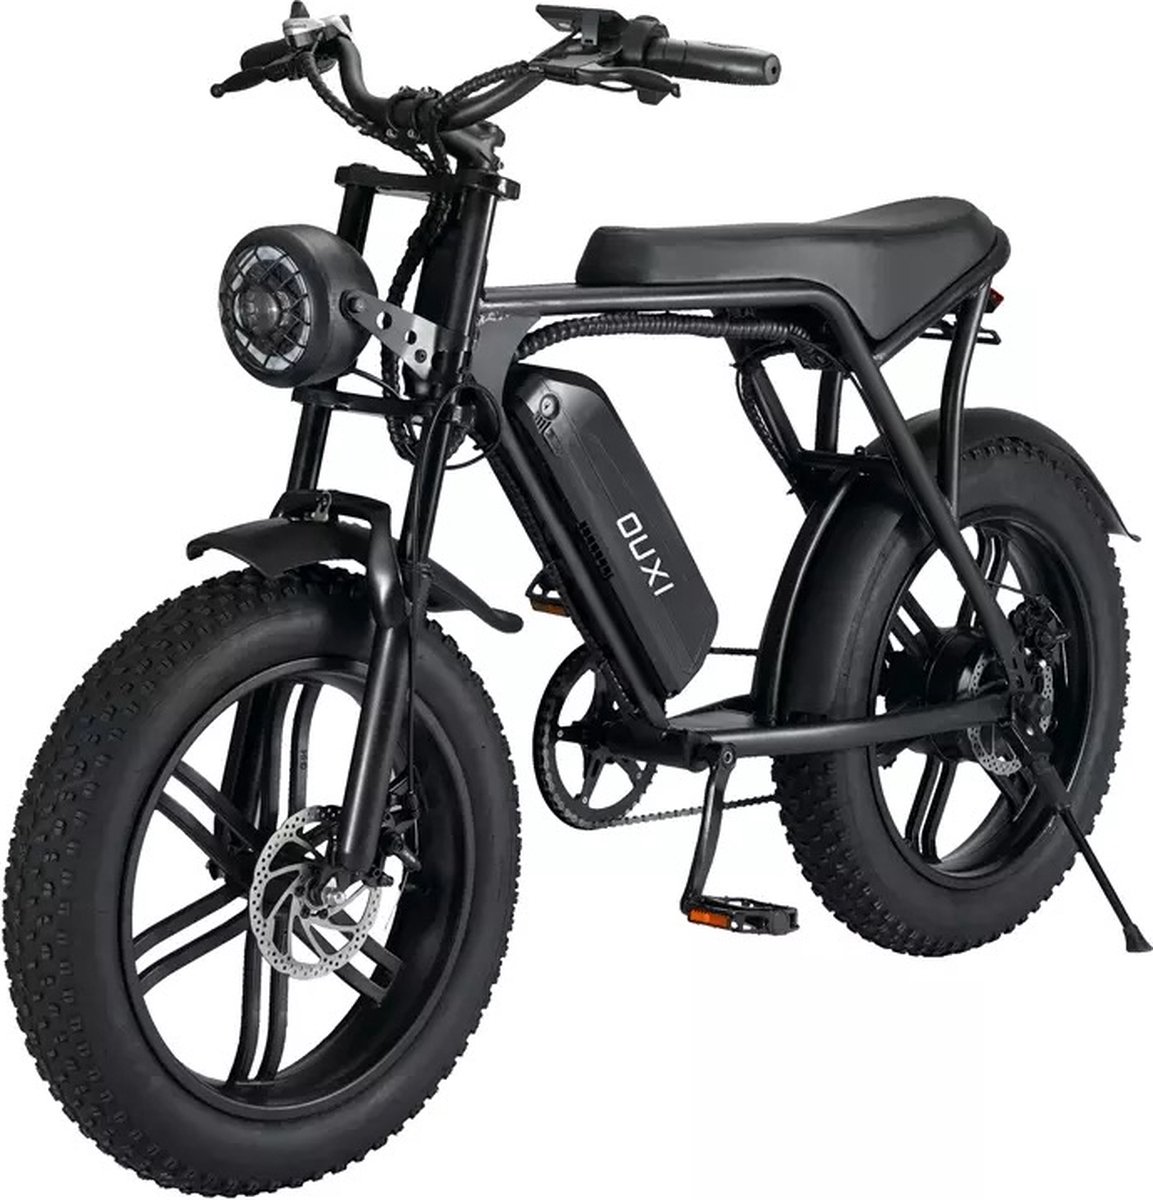 OUXI V8 Fatbike Elektrische Fiets Fatbike Electrisch E Bike 750w 15 Ah Accu